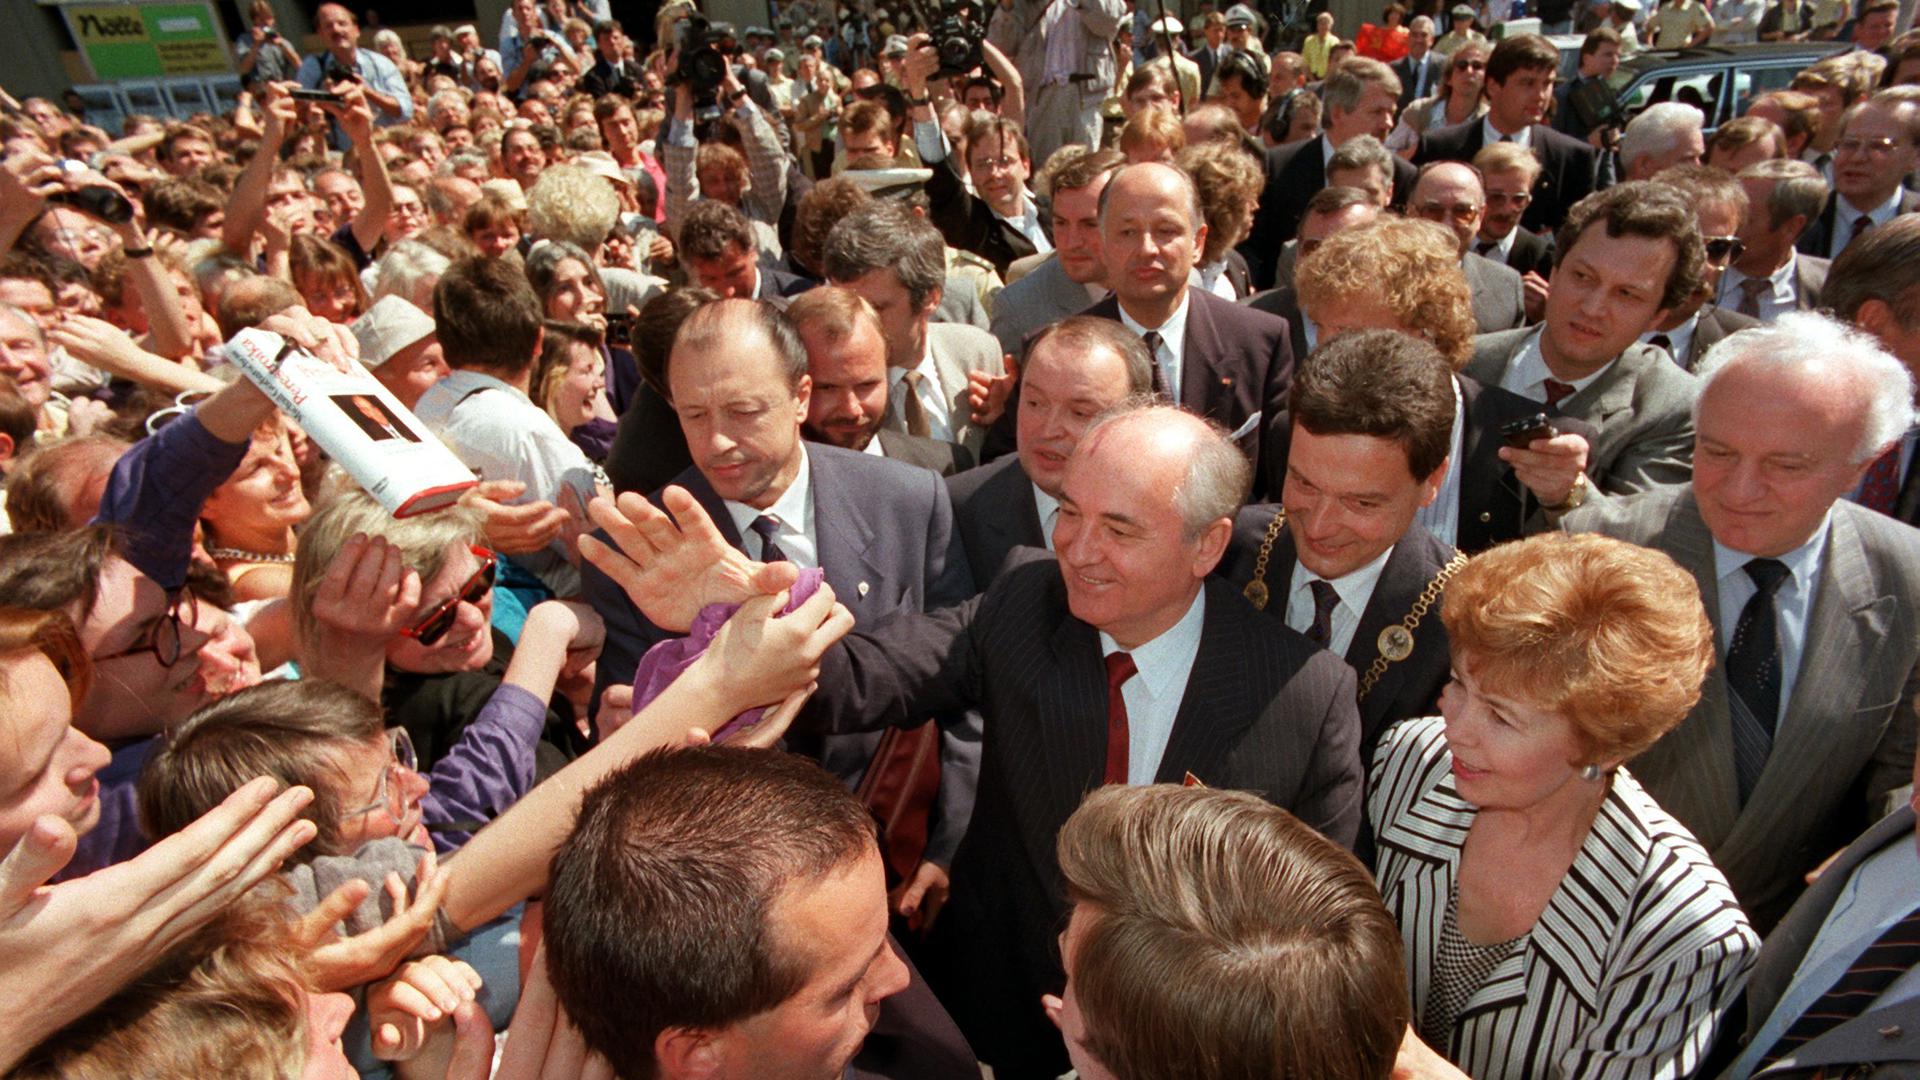 Einen einmaligen Empfang bereitete die Bonner Bevölkerung dem sowjetischen Staats- und Parteichef Michael Gorbatschow und seiner Ehefrau Raissa, als beide das Rathaus besuchten. Beim «Bad in der Menge» mussten die Gäste aus Moskau zahlreiche Hände schütteln. Als einer der Väter der Deutschen Einheit hat Michail Gorbatschow sich seinen Platz in der Geschichte schon vor 30 Jahren gesichert. Er gilt als einer der größten Reformer des 20. Jahrhunderts. Nun wird der Friedensnobelpreisträger und frühere Kremlchef 90 Jahre alt. +++ dpa-Bildfunk +++